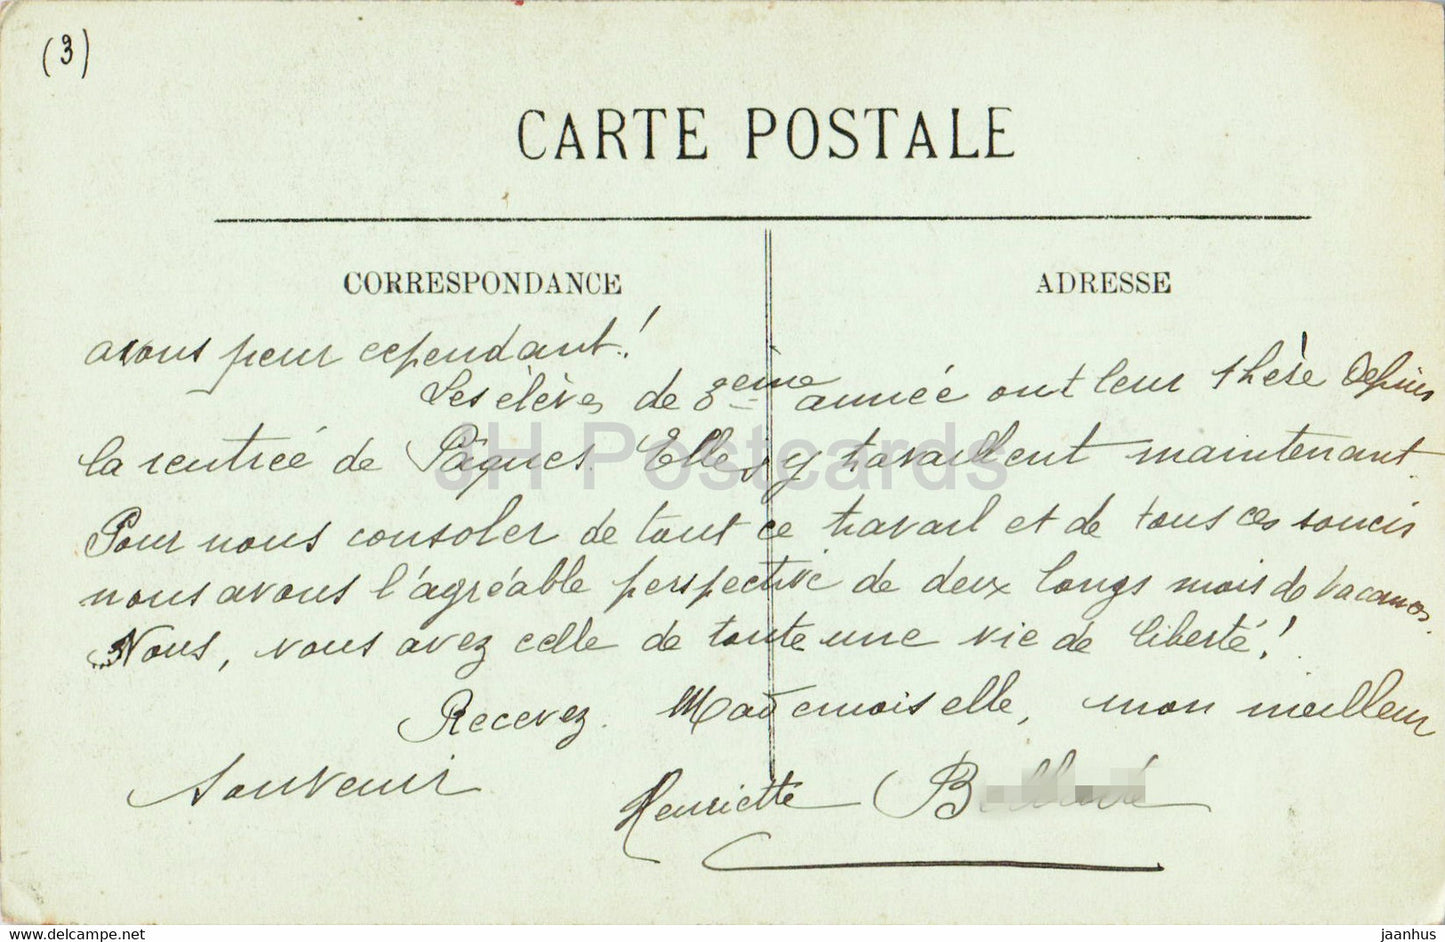 Route et Chemin de Pierrefitte à Cauterets - Le Limacon - 138 - carte postale ancienne - France - occasion